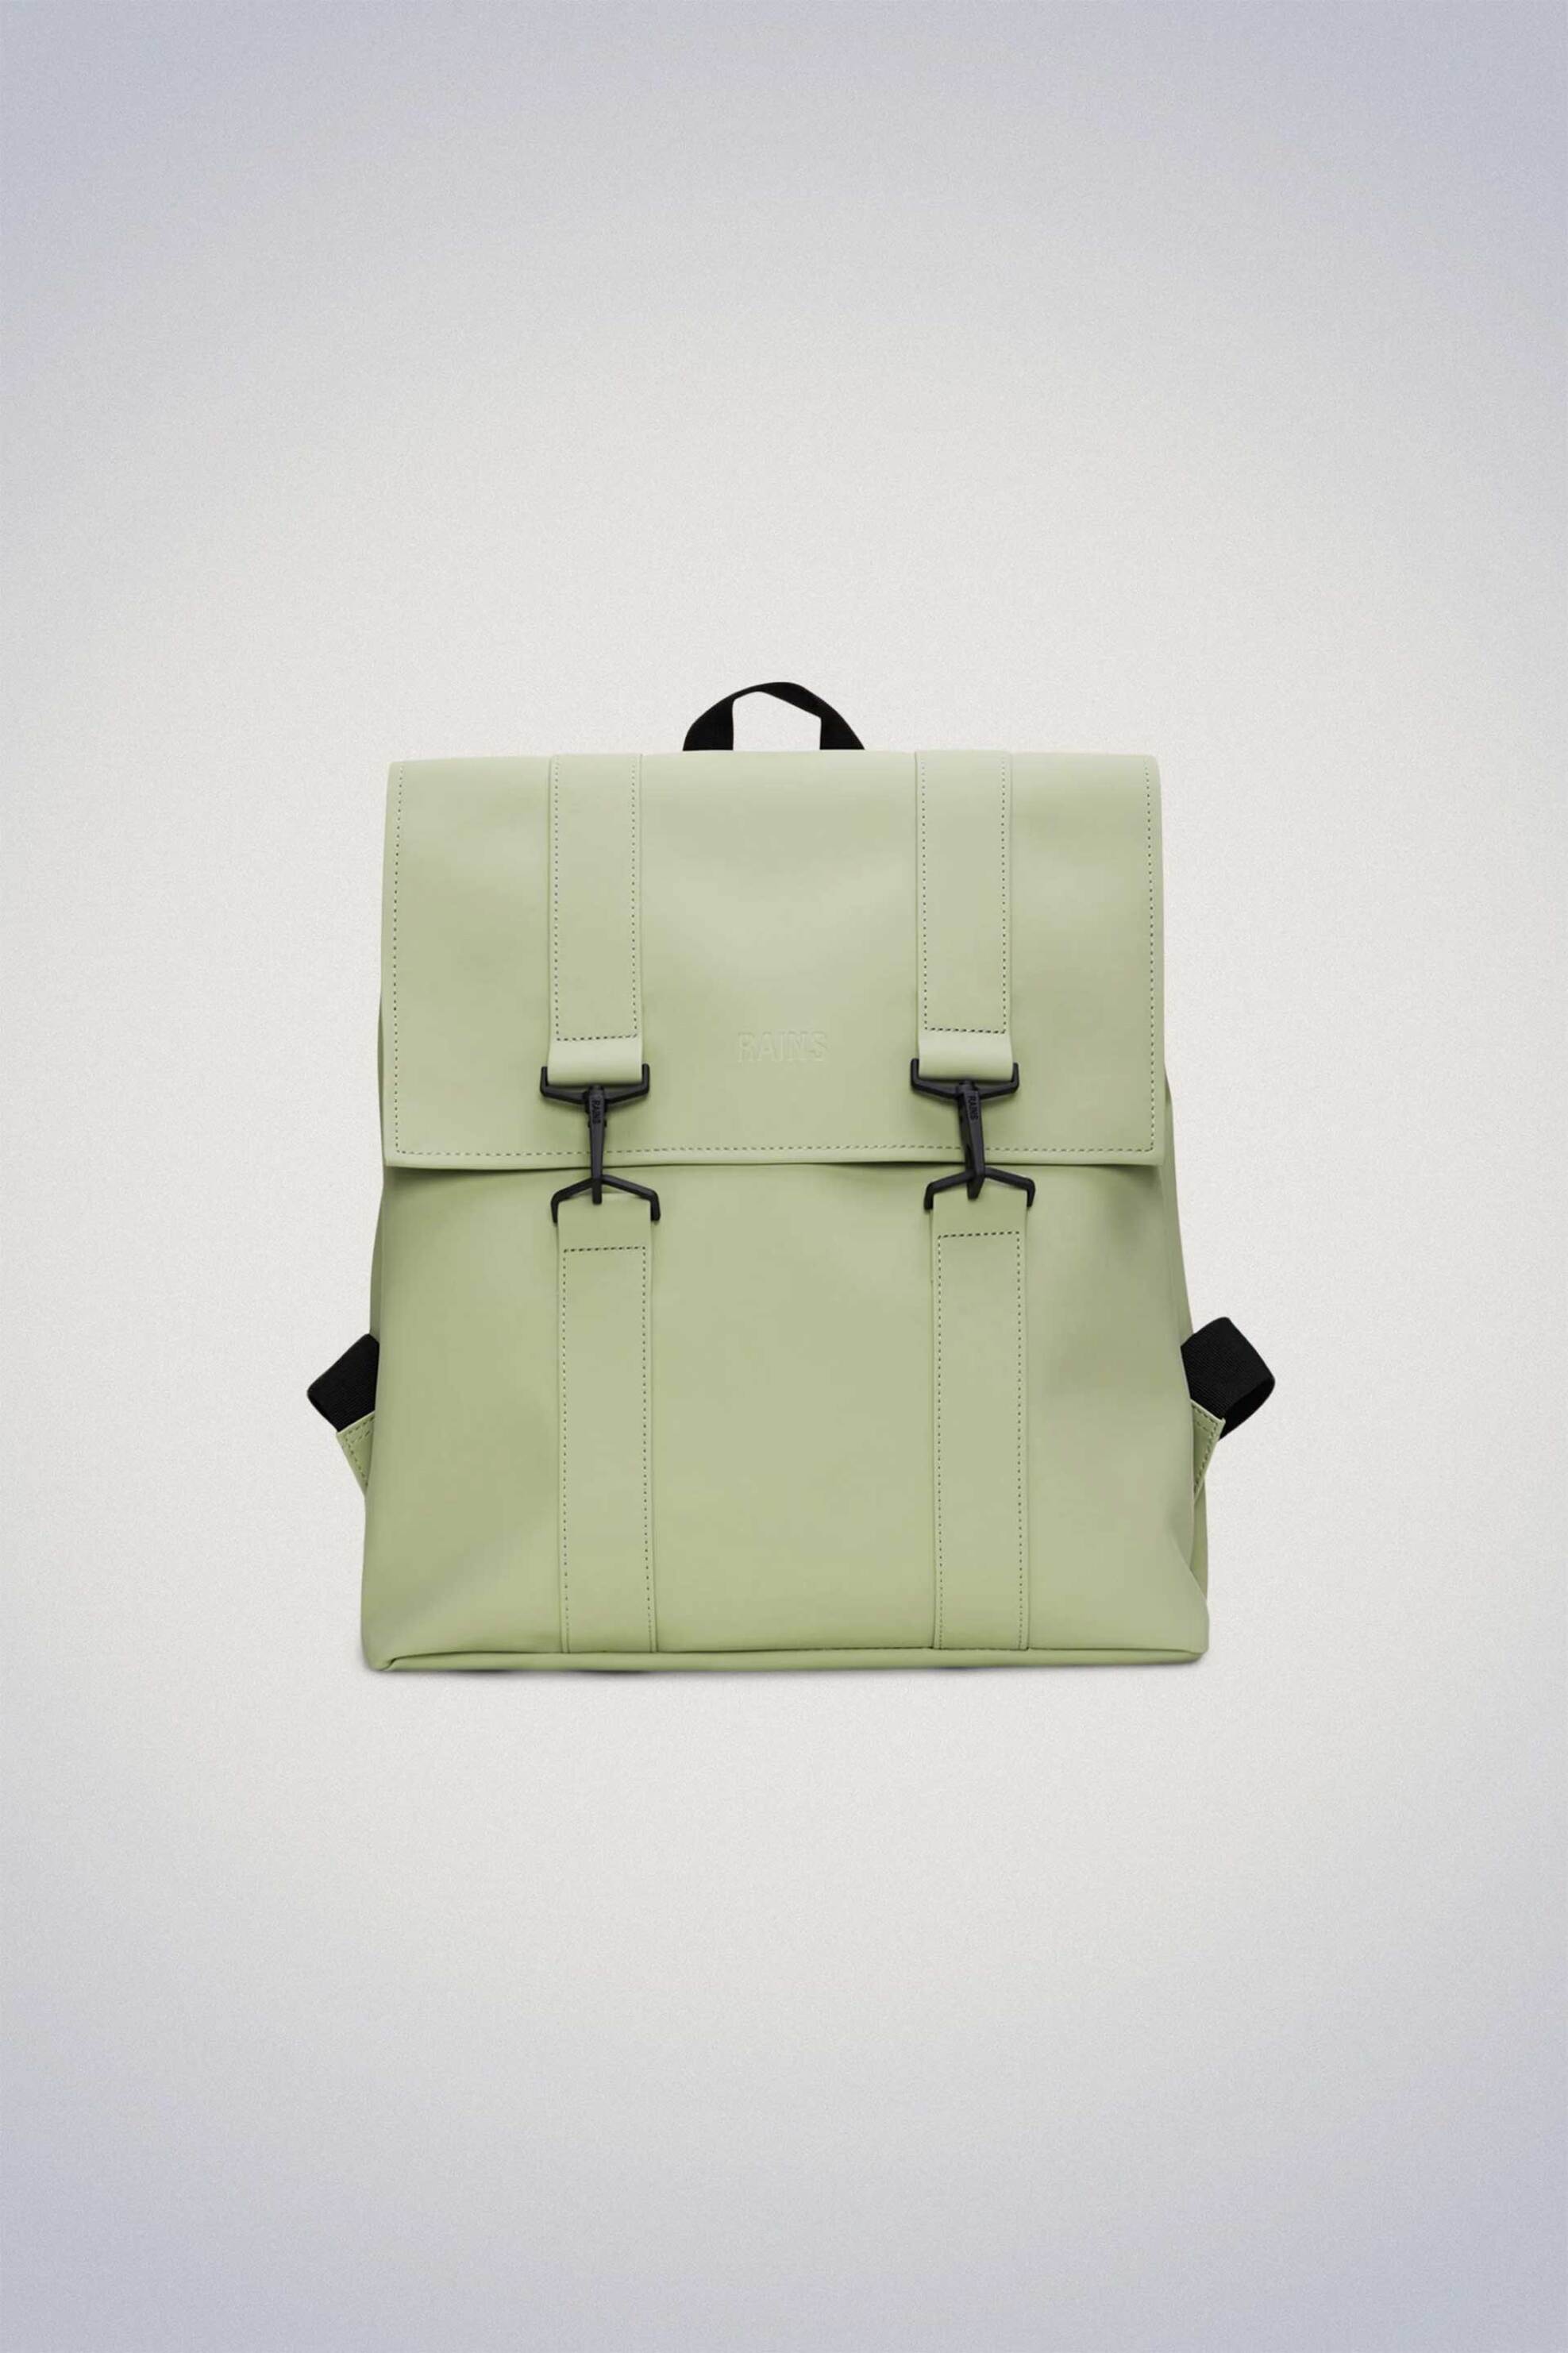 Ανδρική Μόδα > Ανδρικές Τσάντες > Ανδρικά Σακίδια & Backpacks Rains unisex αδιάβροχο backpack "MSN" - RNSSS2413300 Πράσινο Μέντας